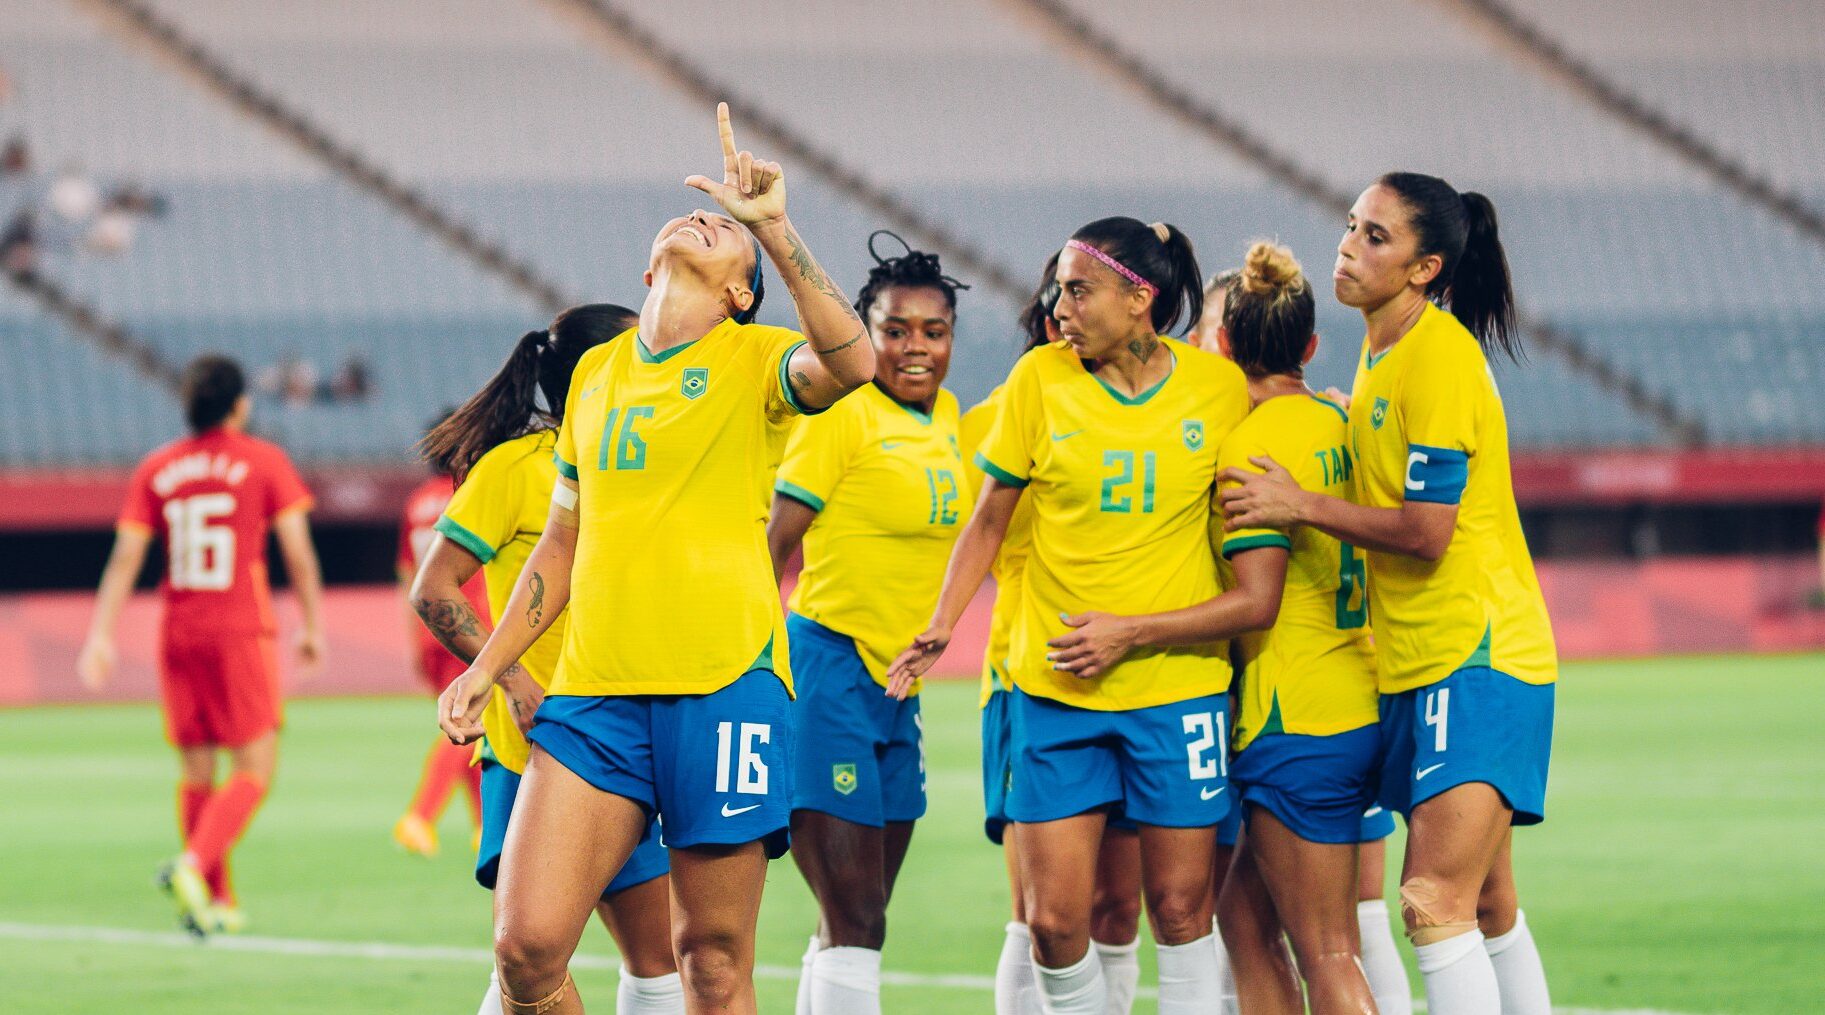 Jugadoras de Brasil celebrando un gol. Resultados de la fecha 1 del futfem en los JJOO